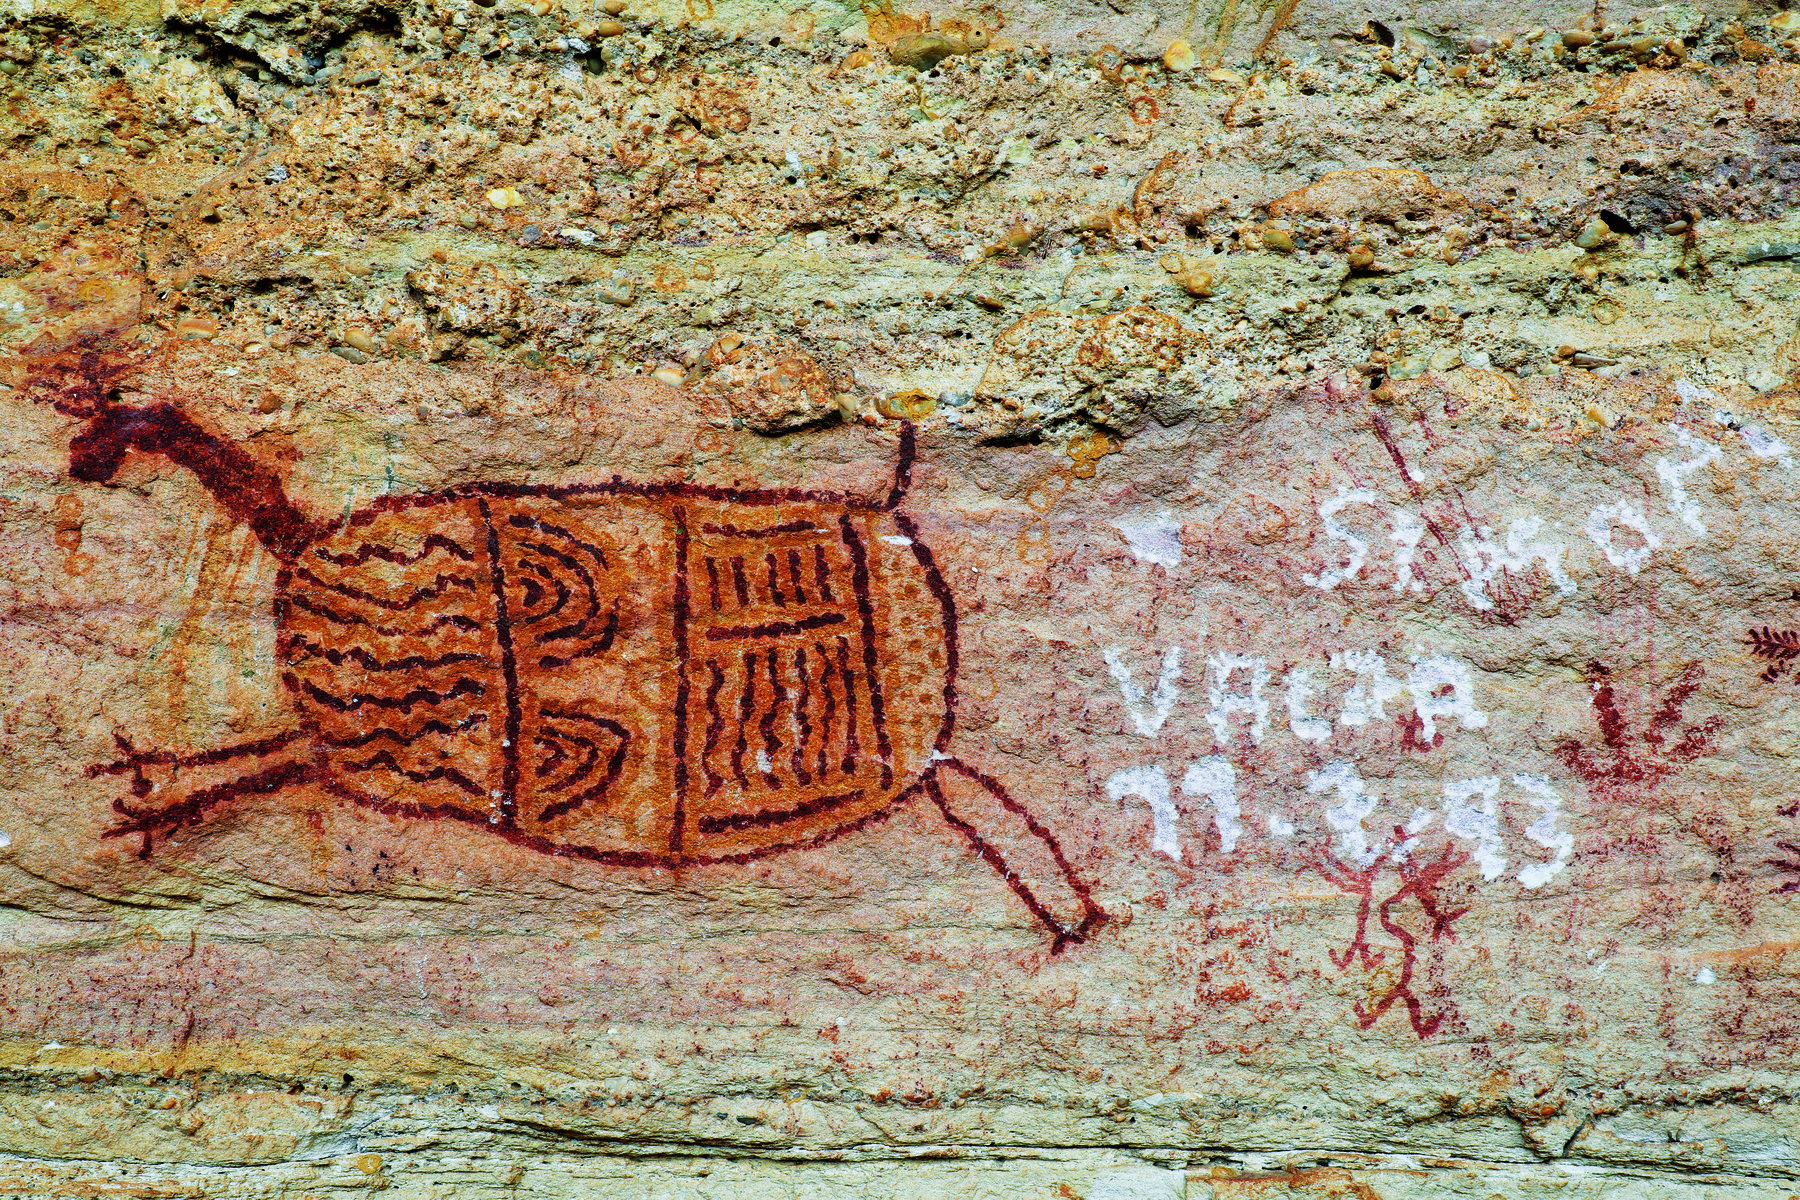 Fotografia. Pintura rupestre de um animal de corpo ovalado com as patas esticadas e rabo curto. Ao lado, escritos em branco feitos recentemente na pedra, sobre pequenos desenhos rupestres.